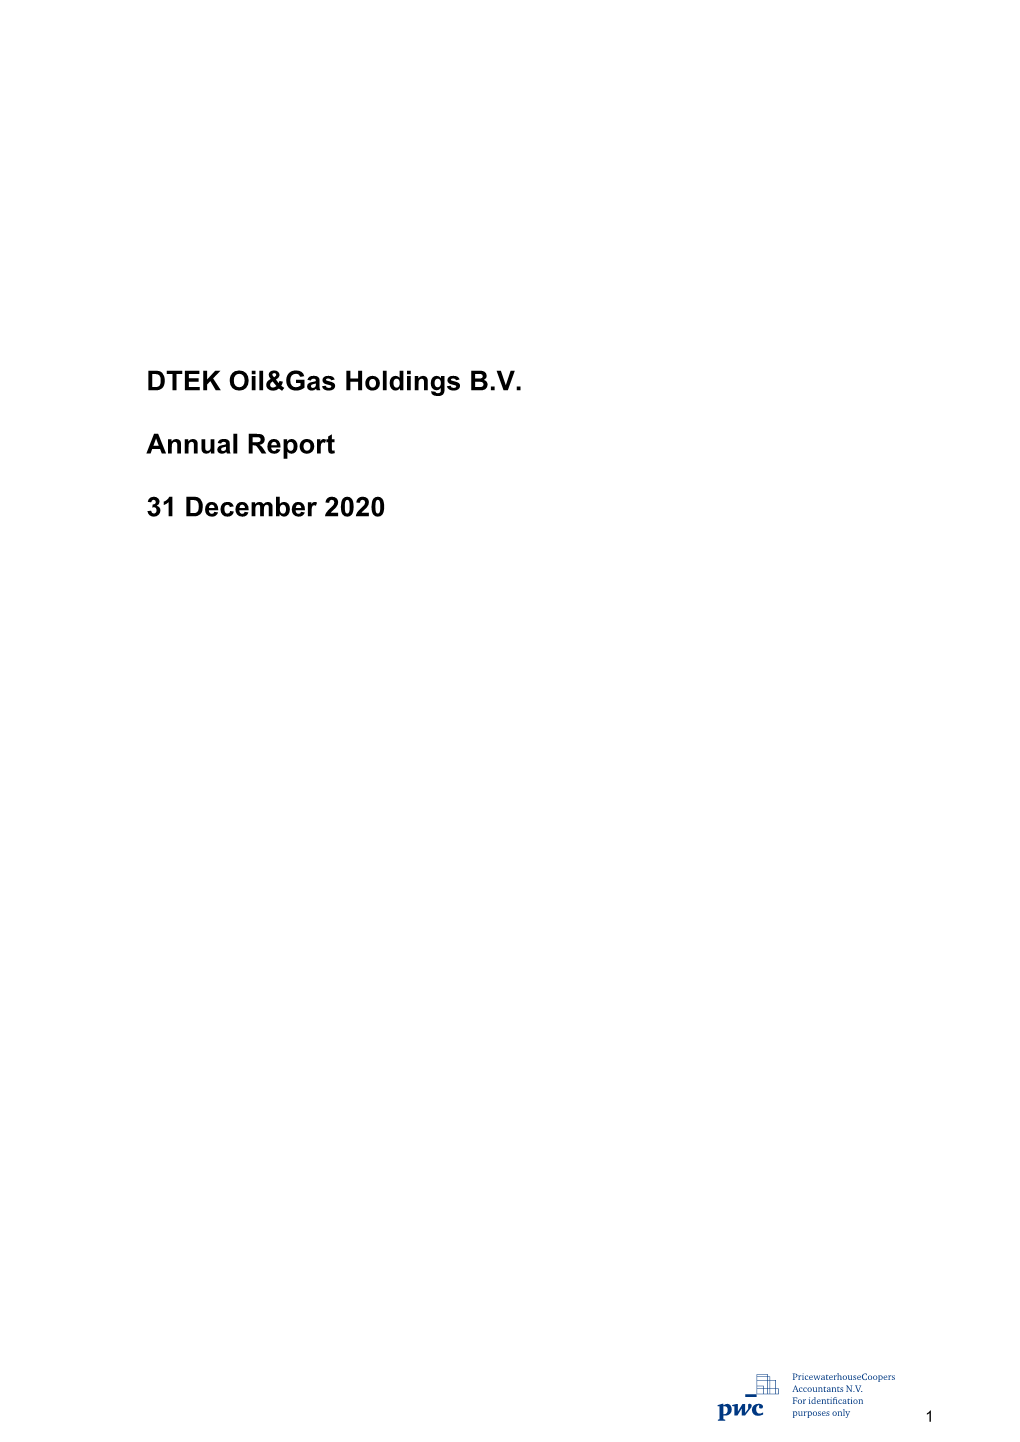 DTEK Oil&Gas Holdings B.V. Annual Report 31 December 2020